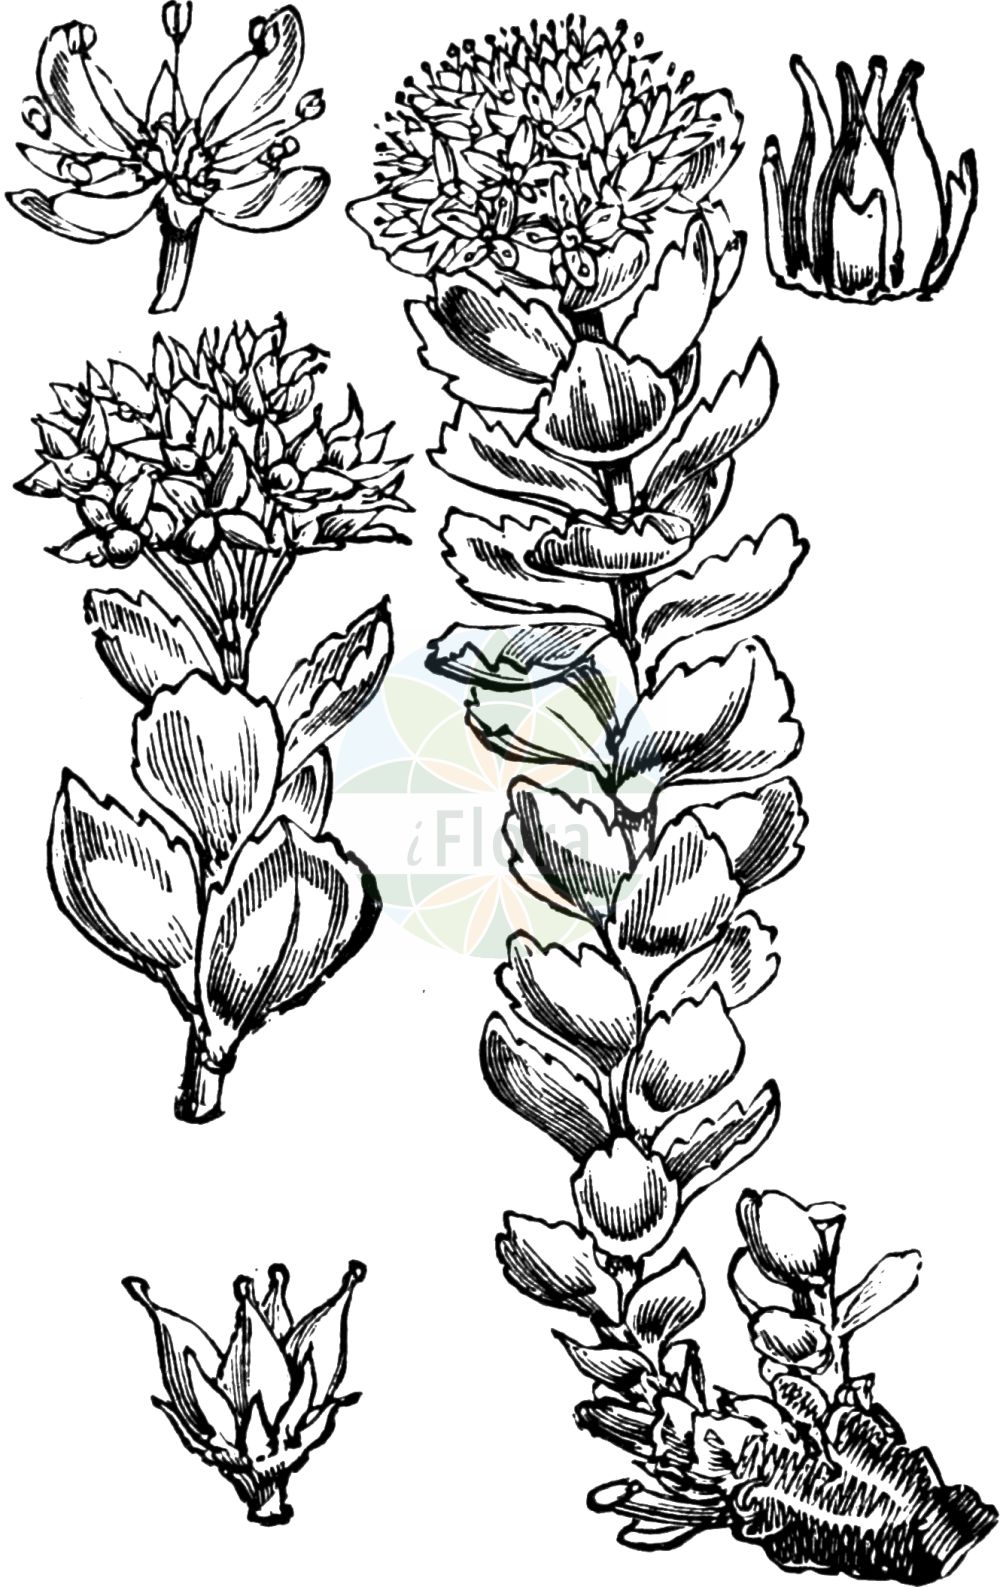 Historische Abbildung von Rhodiola rosea (Rosenwurz - Roseroot). Das Bild zeigt Blatt, Bluete, Frucht und Same. ---- Historical Drawing of Rhodiola rosea (Rosenwurz - Roseroot). The image is showing leaf, flower, fruit and seed.(Rhodiola rosea,Rosenwurz,Roseroot,Rhodiola arctica,Rhodiola iremelica,Rhodiola rosea,Rhodiola scopolii,Sedum rhodiola,Sedum rosea,Sedum roseum,Sedum scopolii,Rosenwurz,Roseroot,King's Crown,Roseroot Stonecrop,Golden Root,Rhodiola,Rosenwurz,Stonecrop,Crassulaceae,Dickblattgewächse,Stonecrop family,Blatt,Bluete,Frucht,Same,leaf,flower,fruit,seed,Fitch et al. (1880))